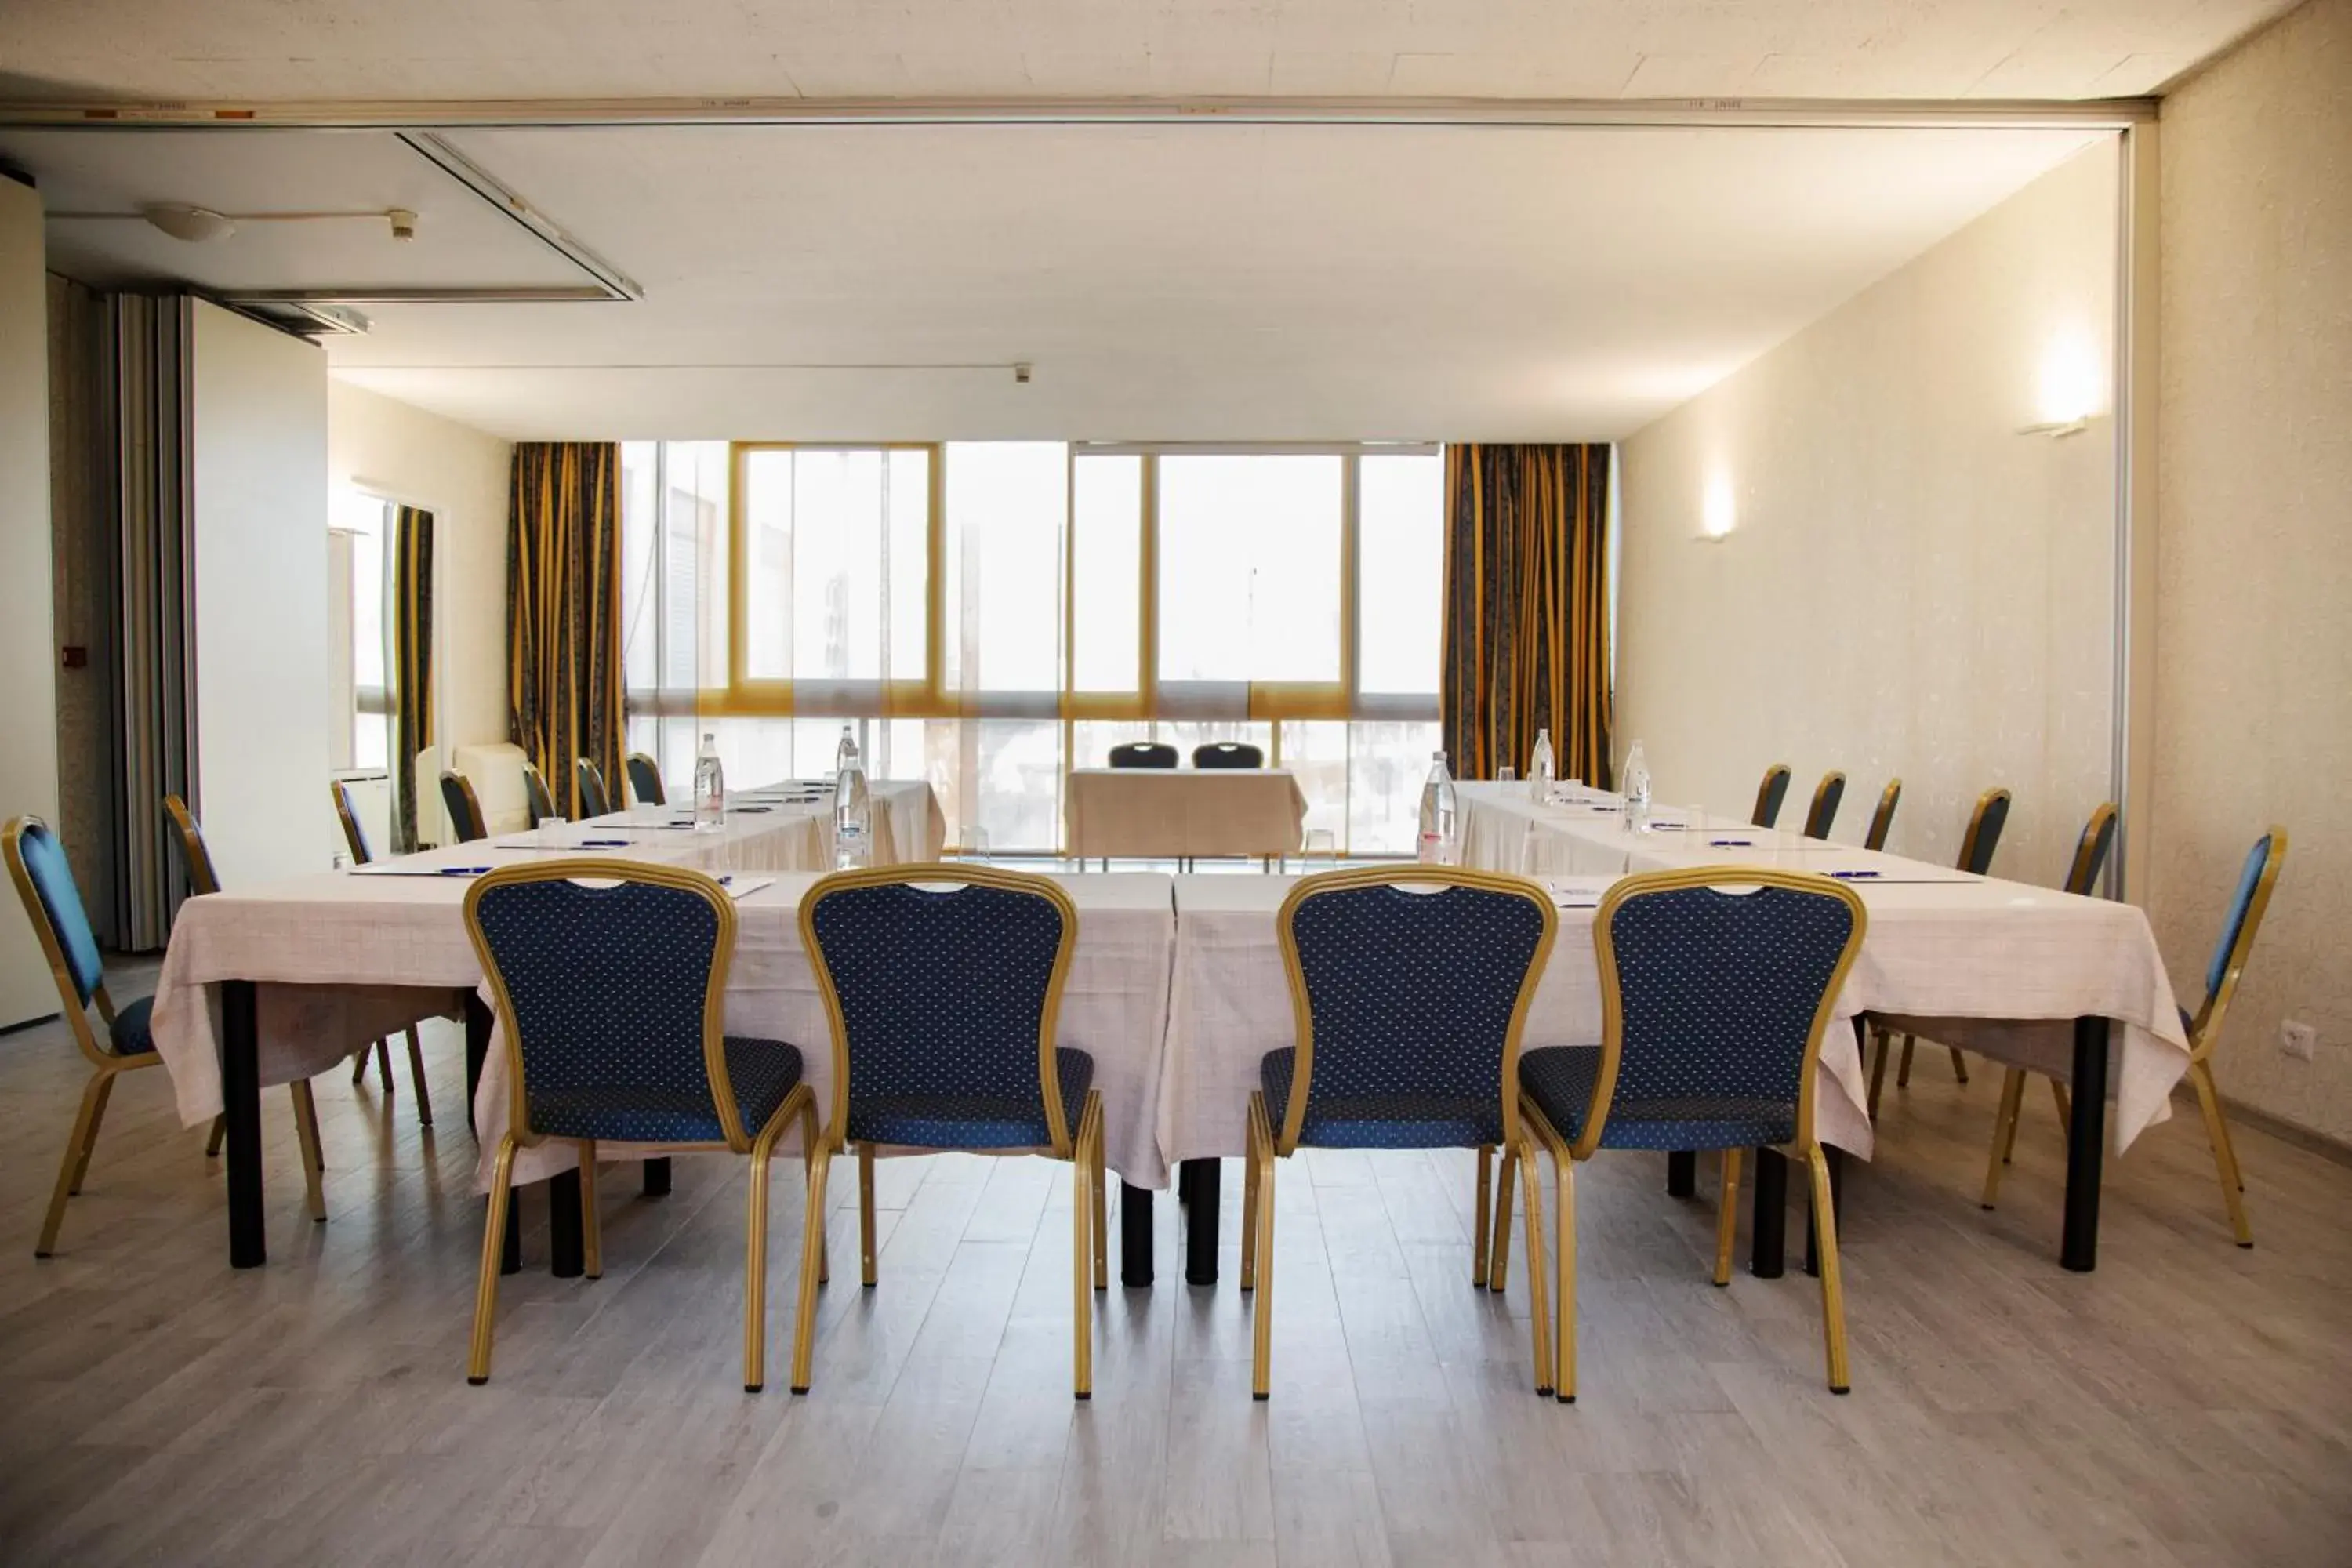 Meeting/conference room in iH Hotels Milano Eur - Trezzano sul Naviglio